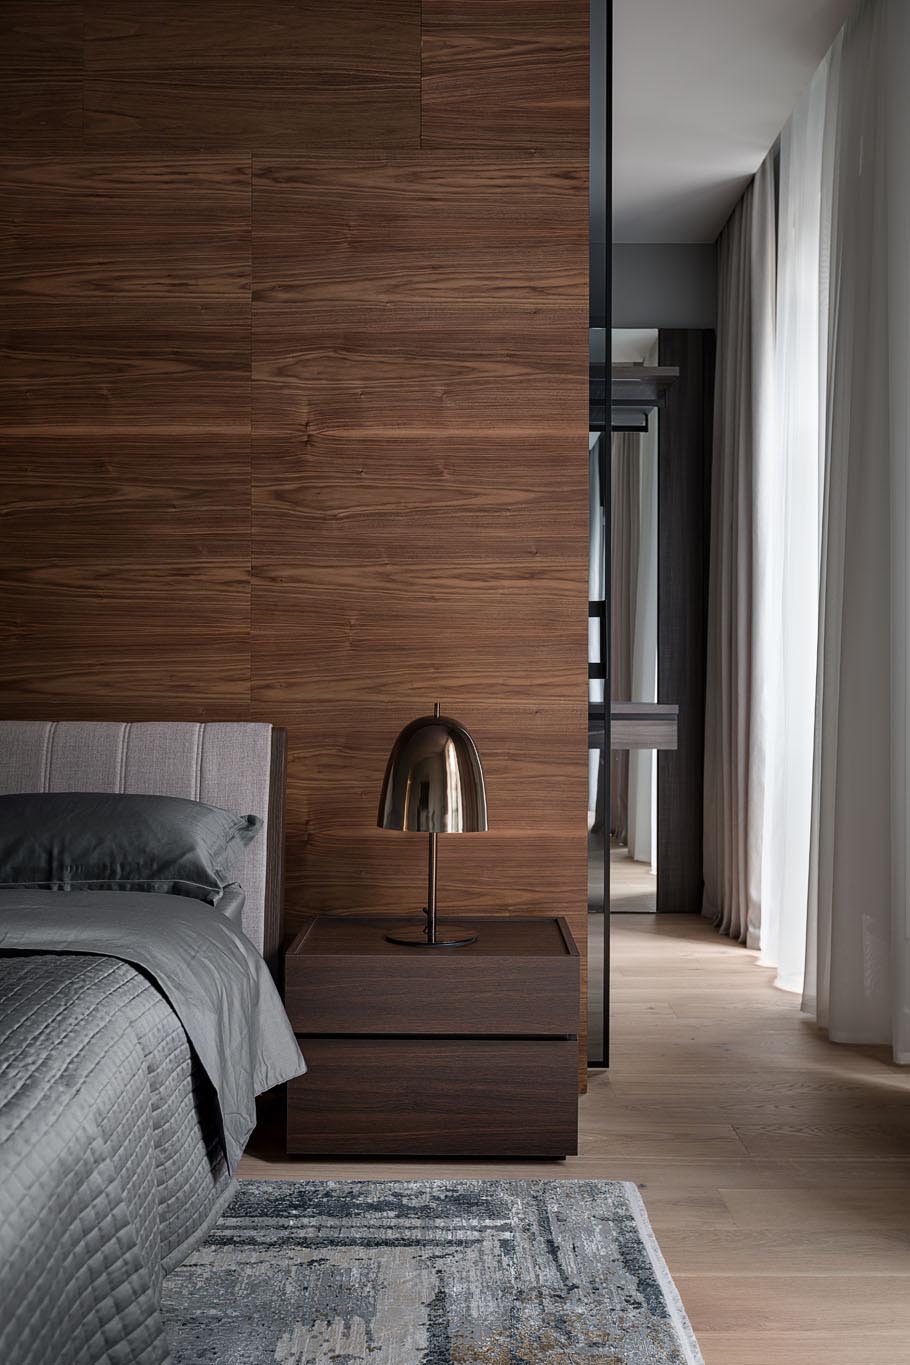 Trong suite phòng ngủ chính hiện đại này, có một bức tường bằng gỗ ngăn cách phòng ngủ với tủ quần áo không cửa ngăn, cũng có cửa kính màu đen.